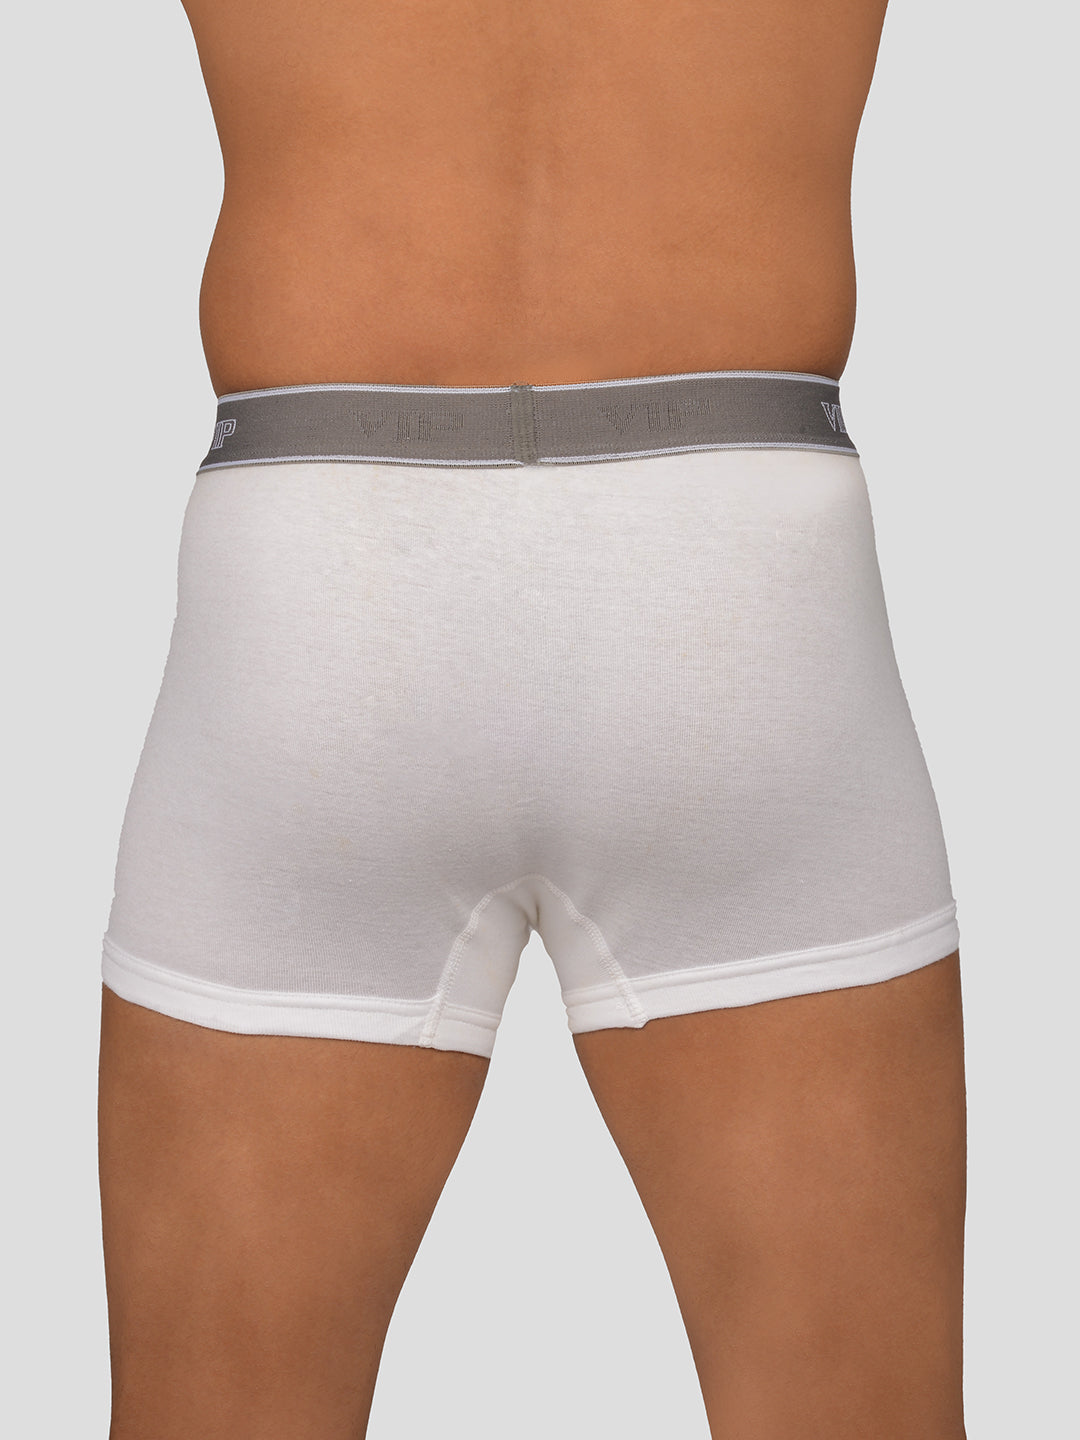 White Underwear 